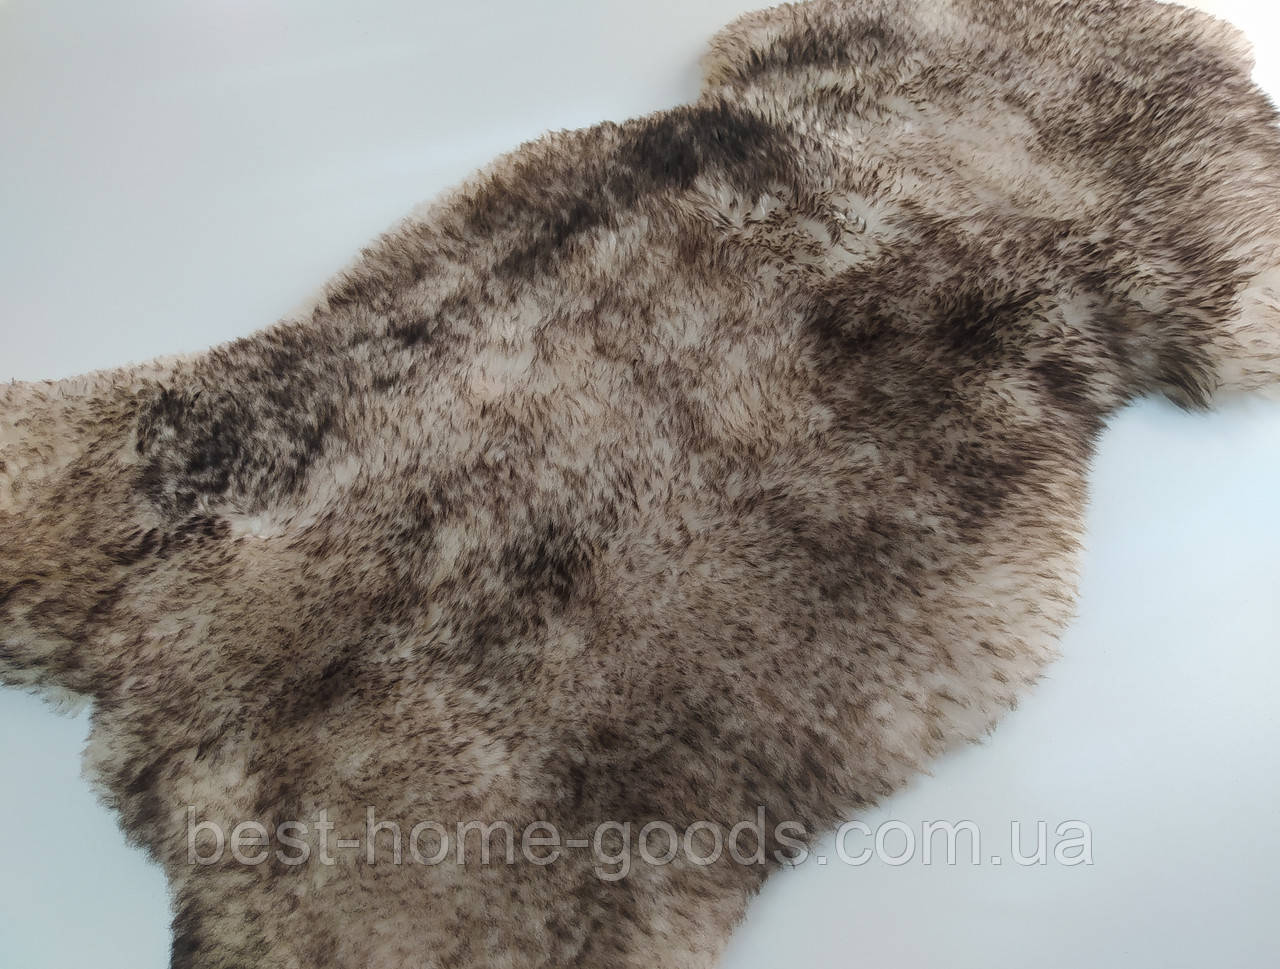 Натуральна хутряна накидка з овечої шкіри з темними кінчиками 1.25 см * 60 см.